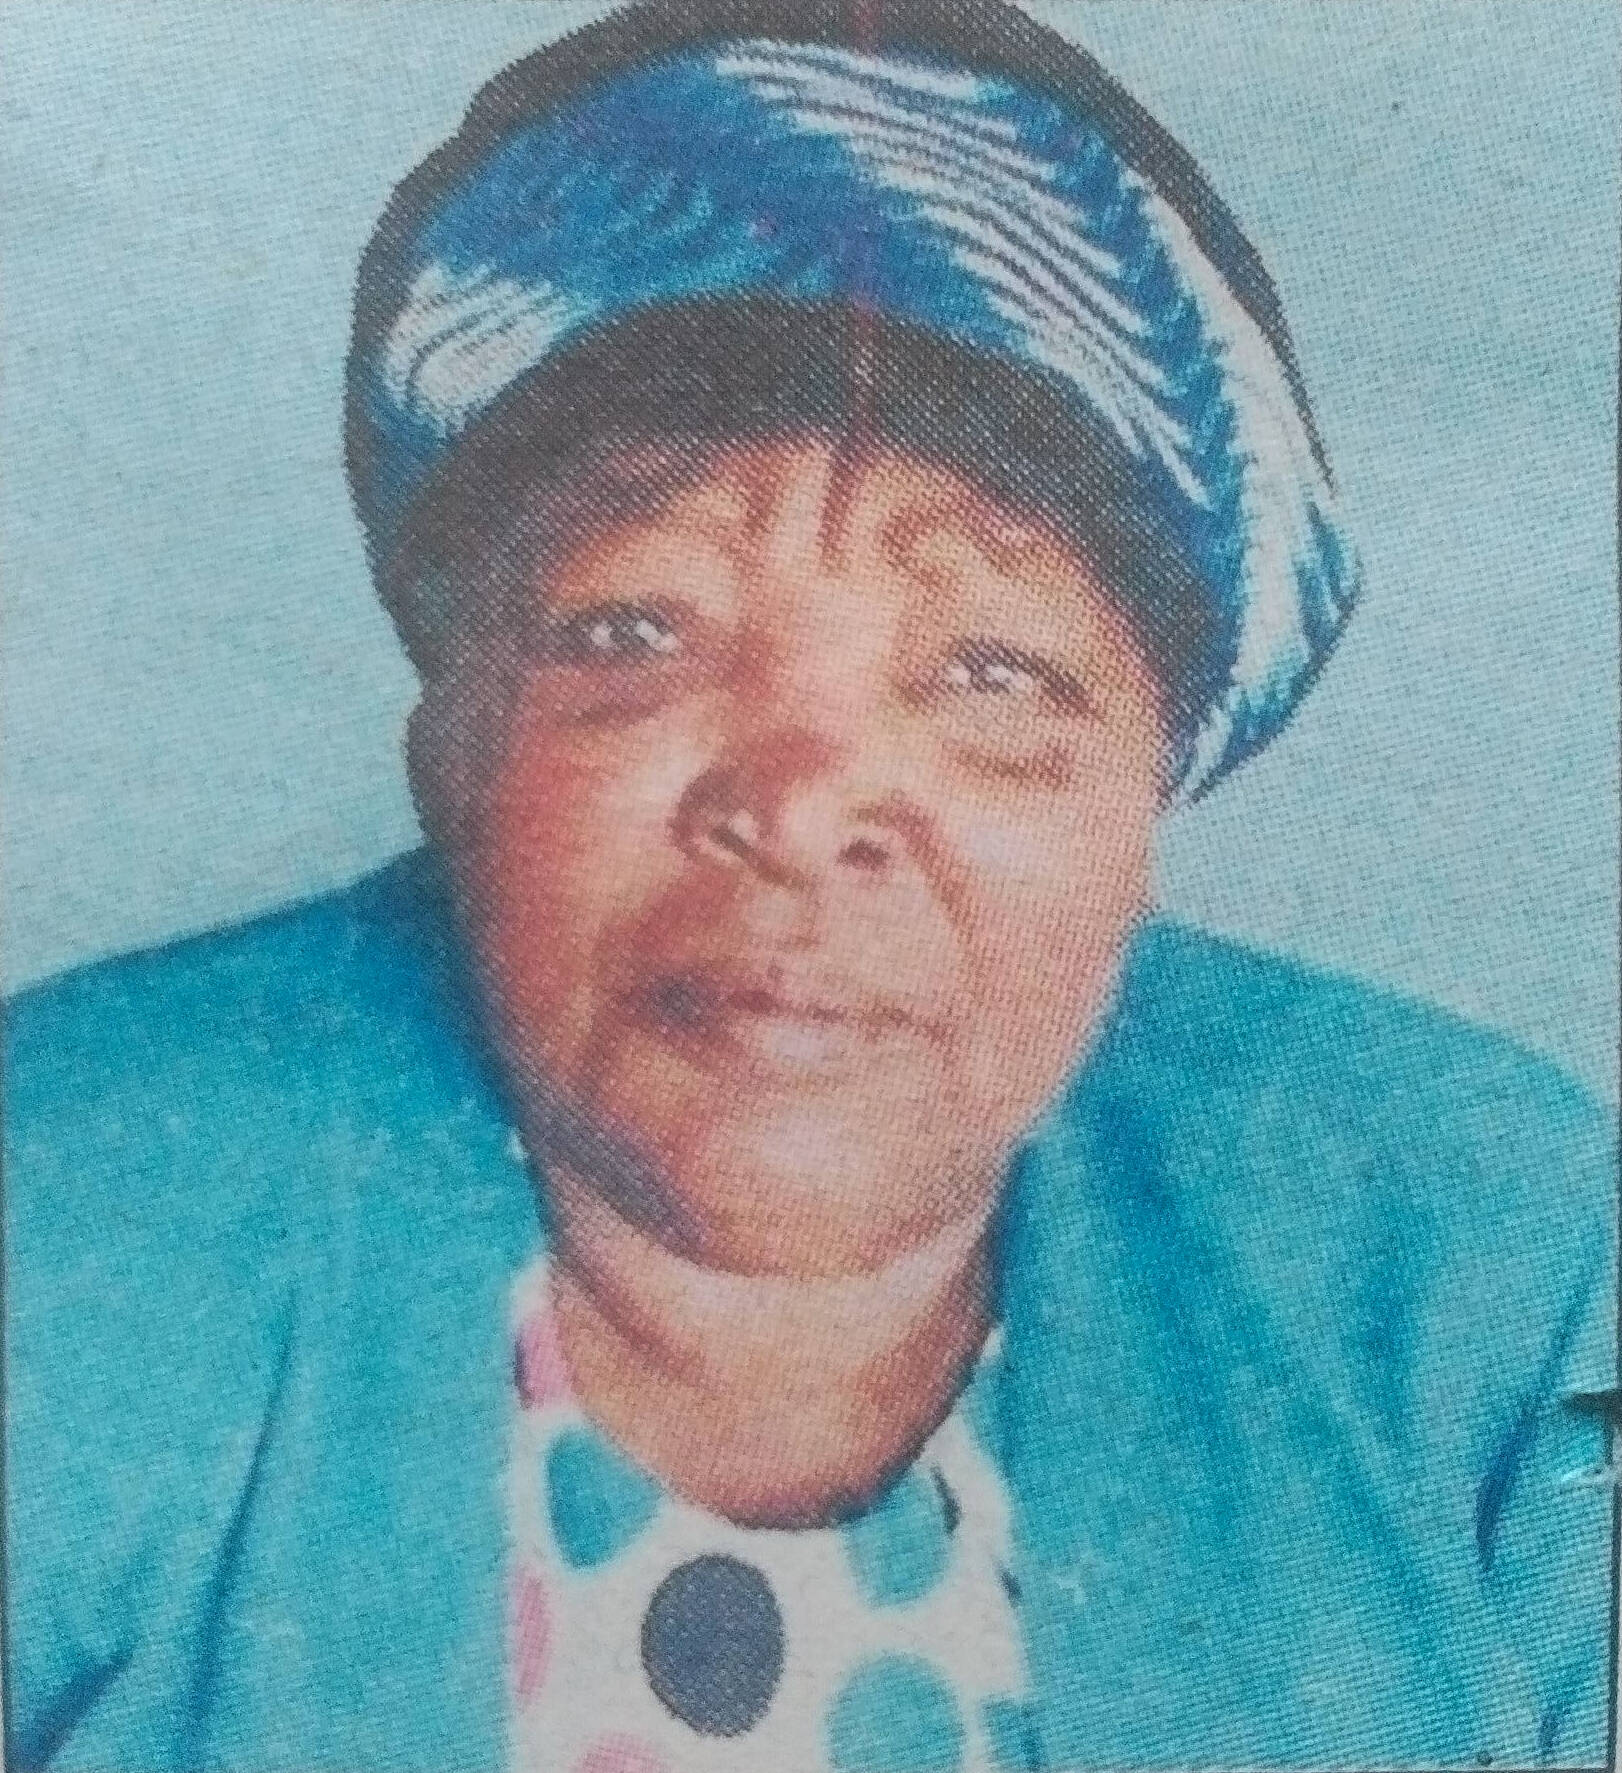 Obituary Image of Malia Ndul Wambua